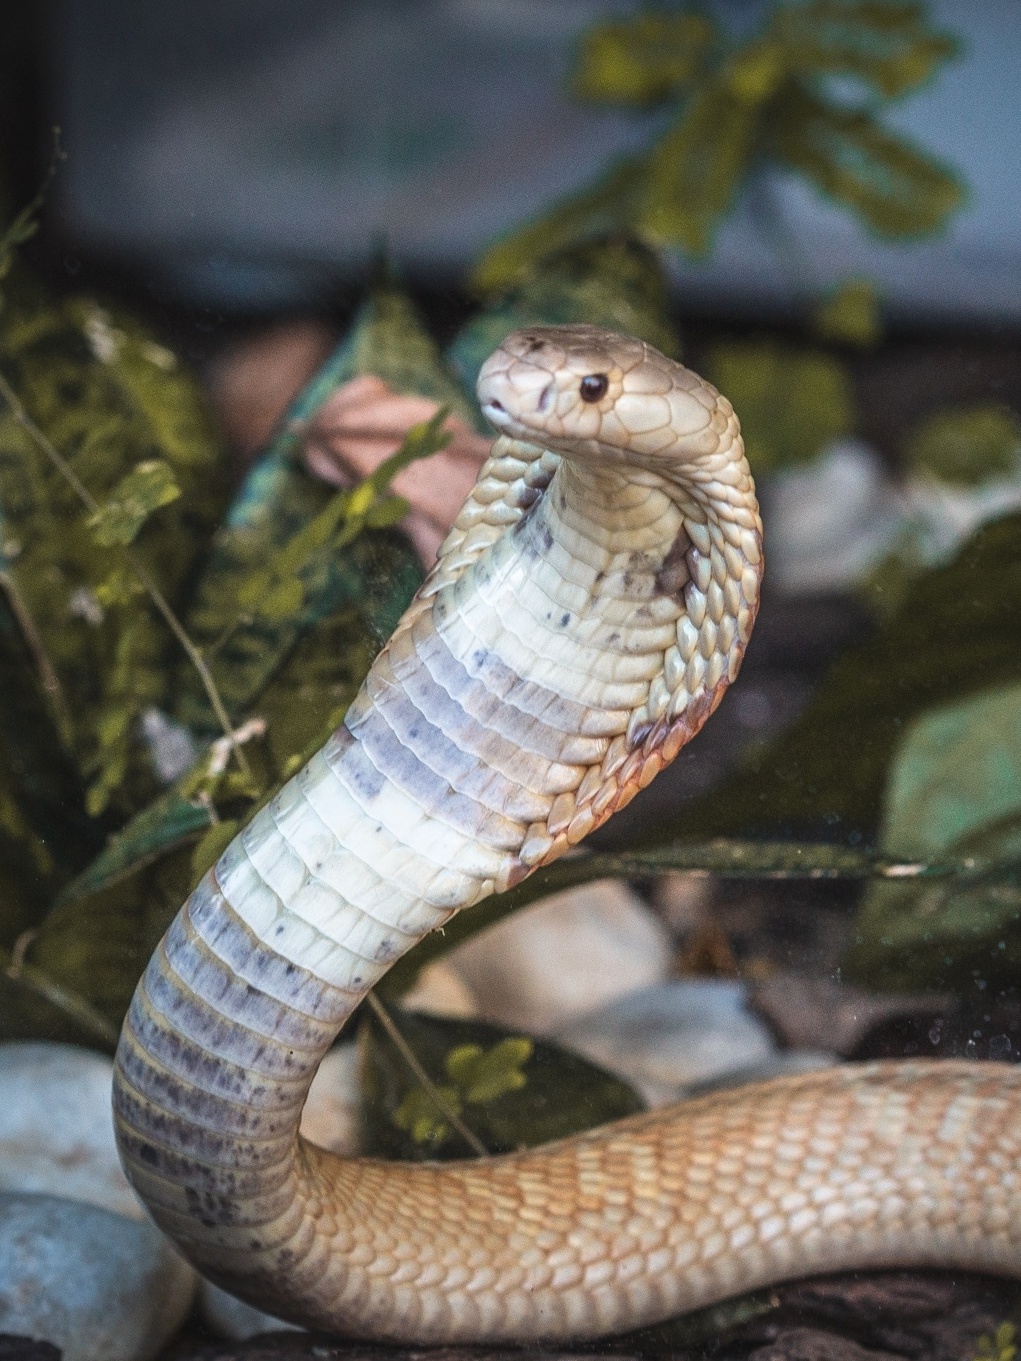 DF: Ibama resgata 32 serpentes e aplica mais de R$ 300 mil em multas